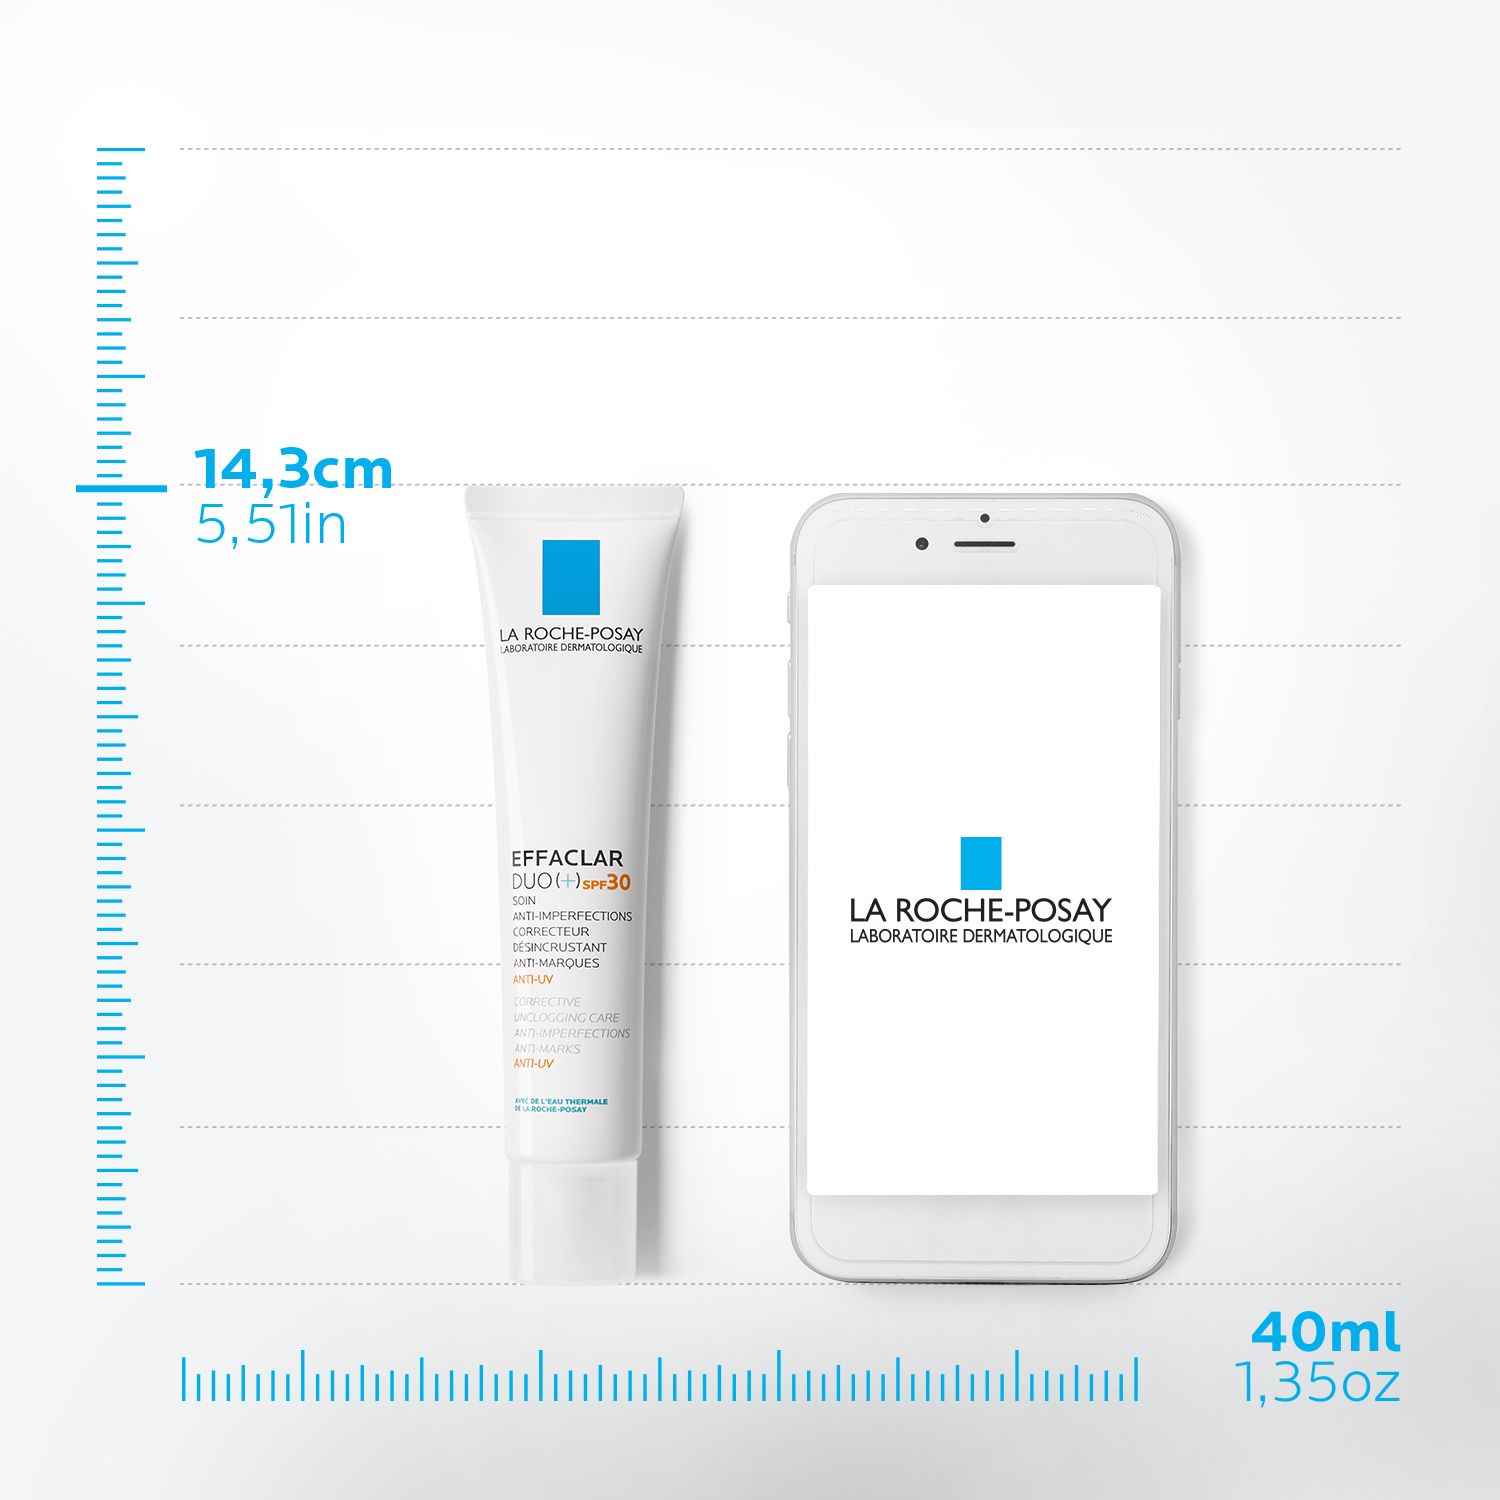 LA ROCHE POSAY Effaclar Duo+ Acne Treatment Cream for Oily and Acne Prone Skin with SPF30 -  40 ml